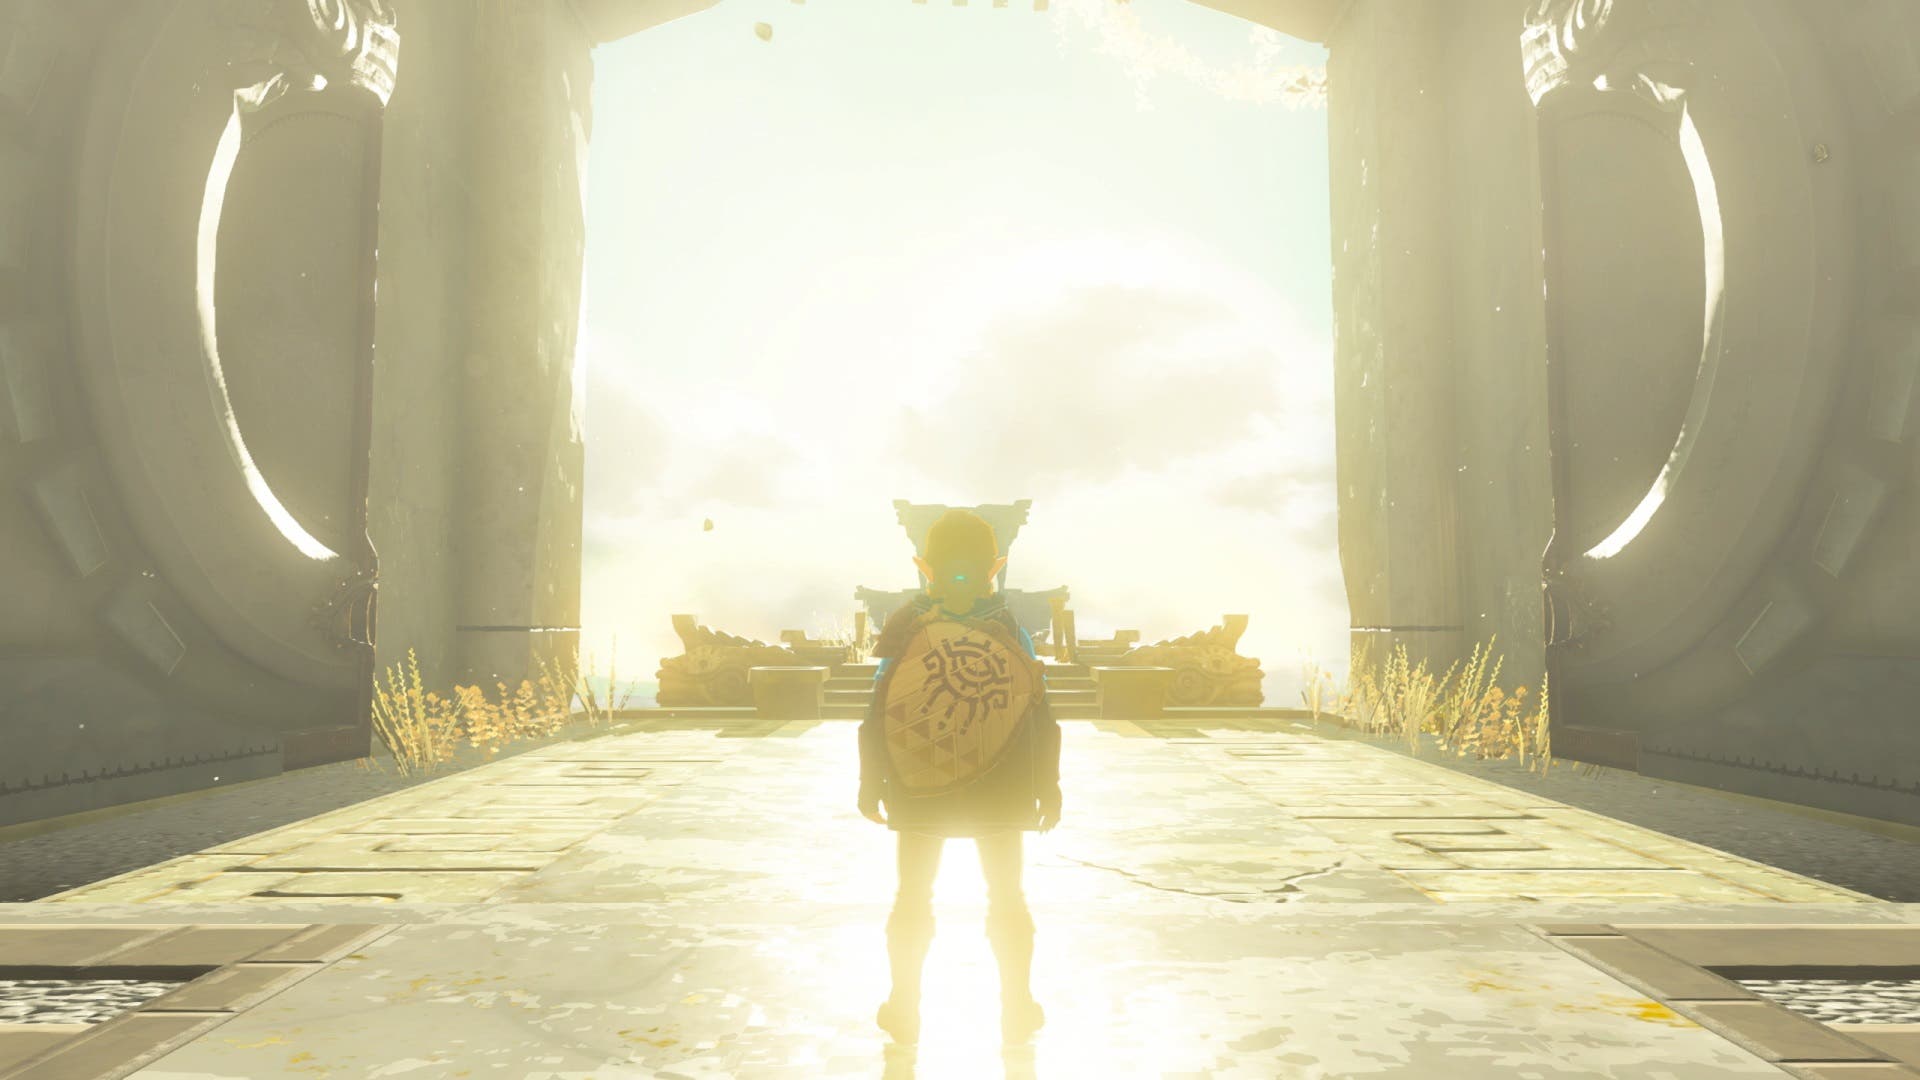 Consiguen mejorar el rendimiento de Zelda: Tears of the Kingdom en Switch